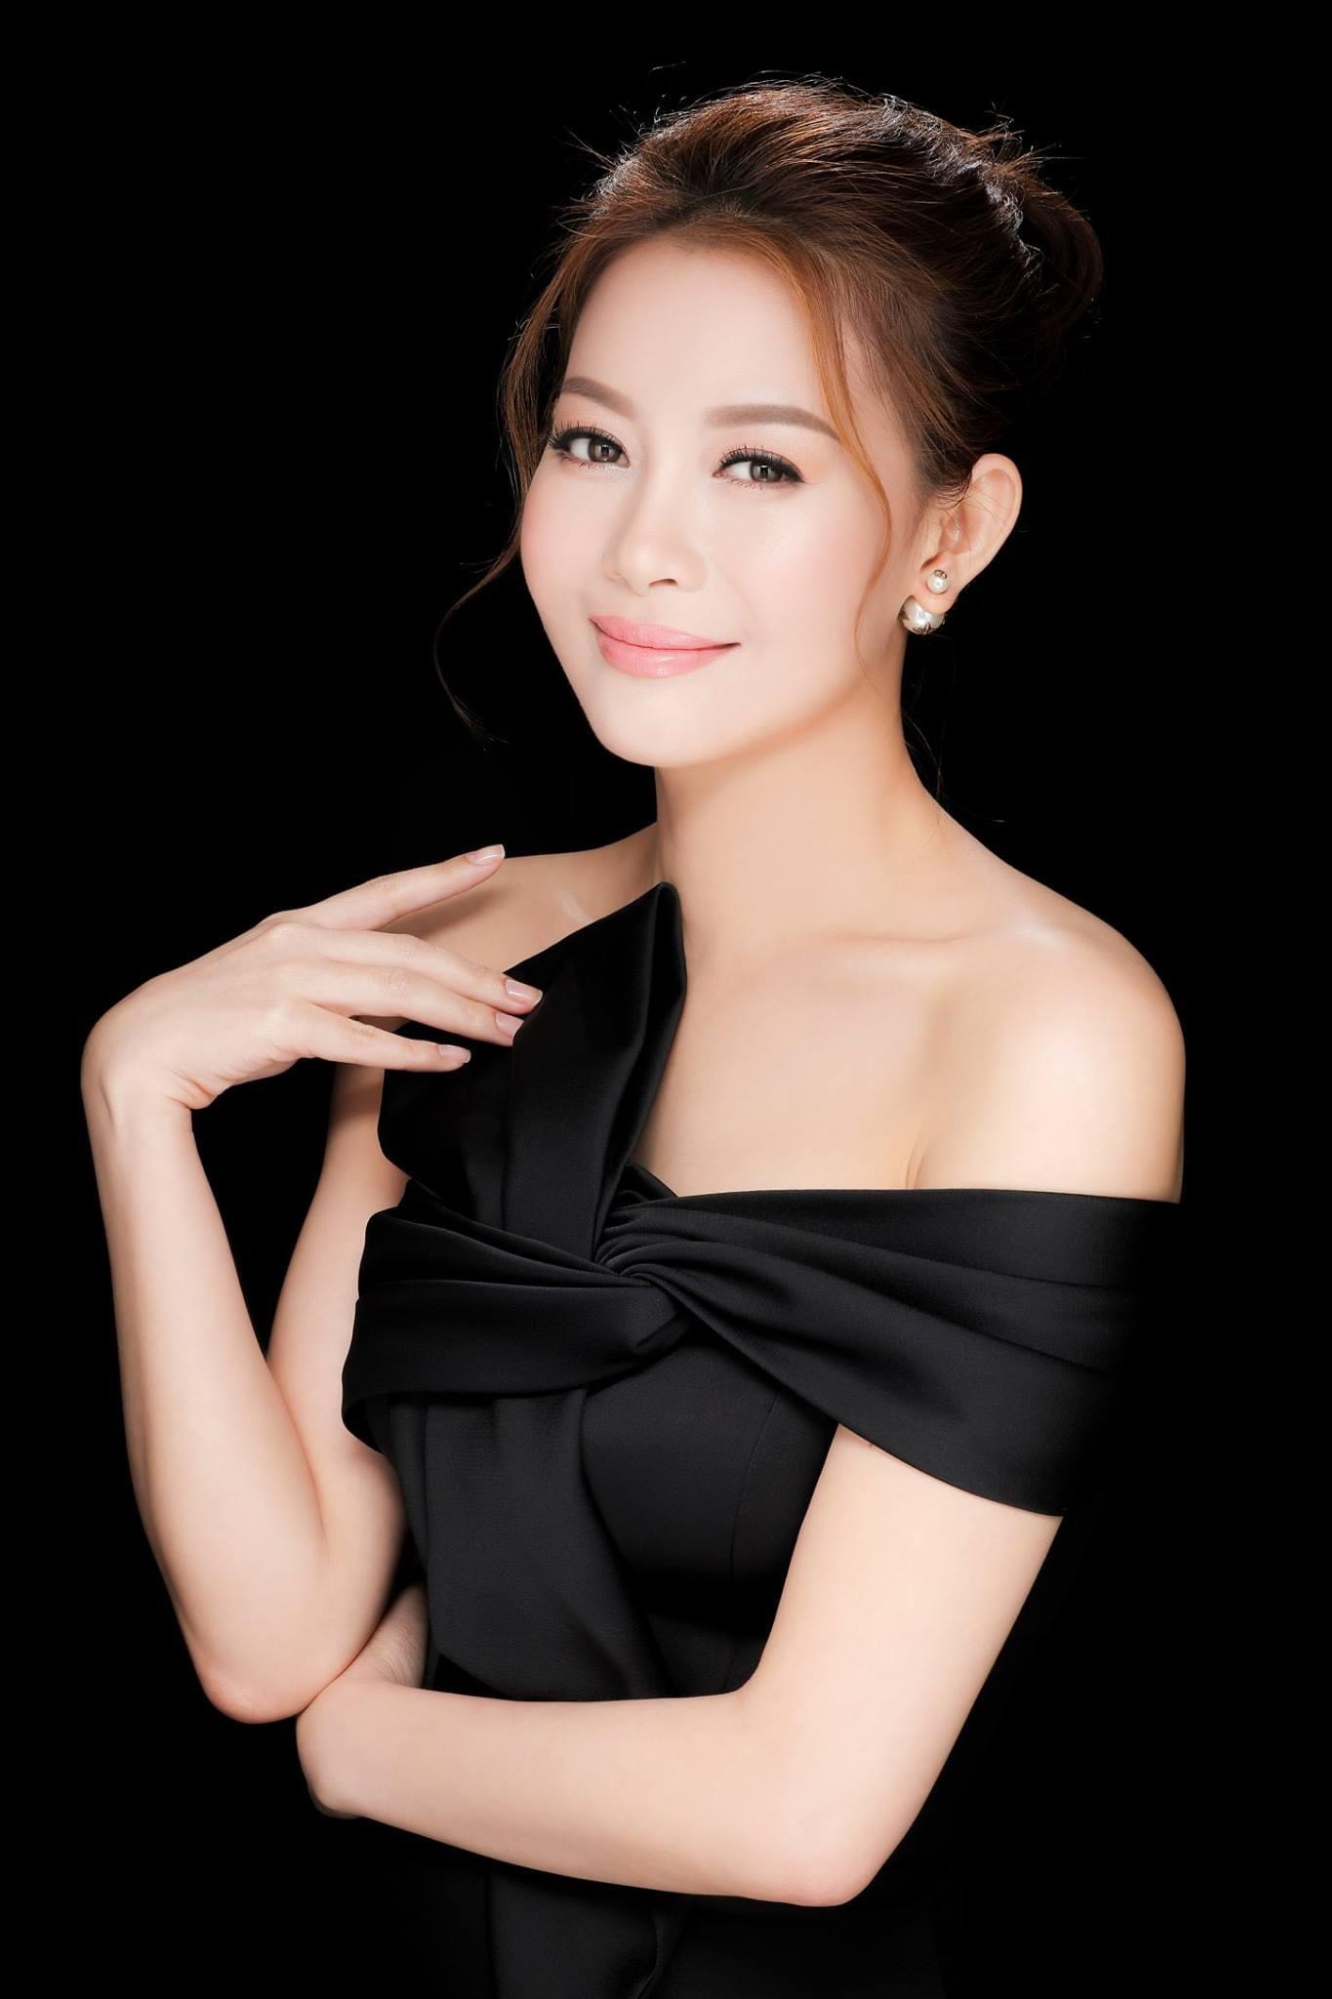 Hoa hậu Ngọc Châu bị chỉ trích 'nặng vía', Hoa hậu Hải Dương lên tiếng bênh vực - 1